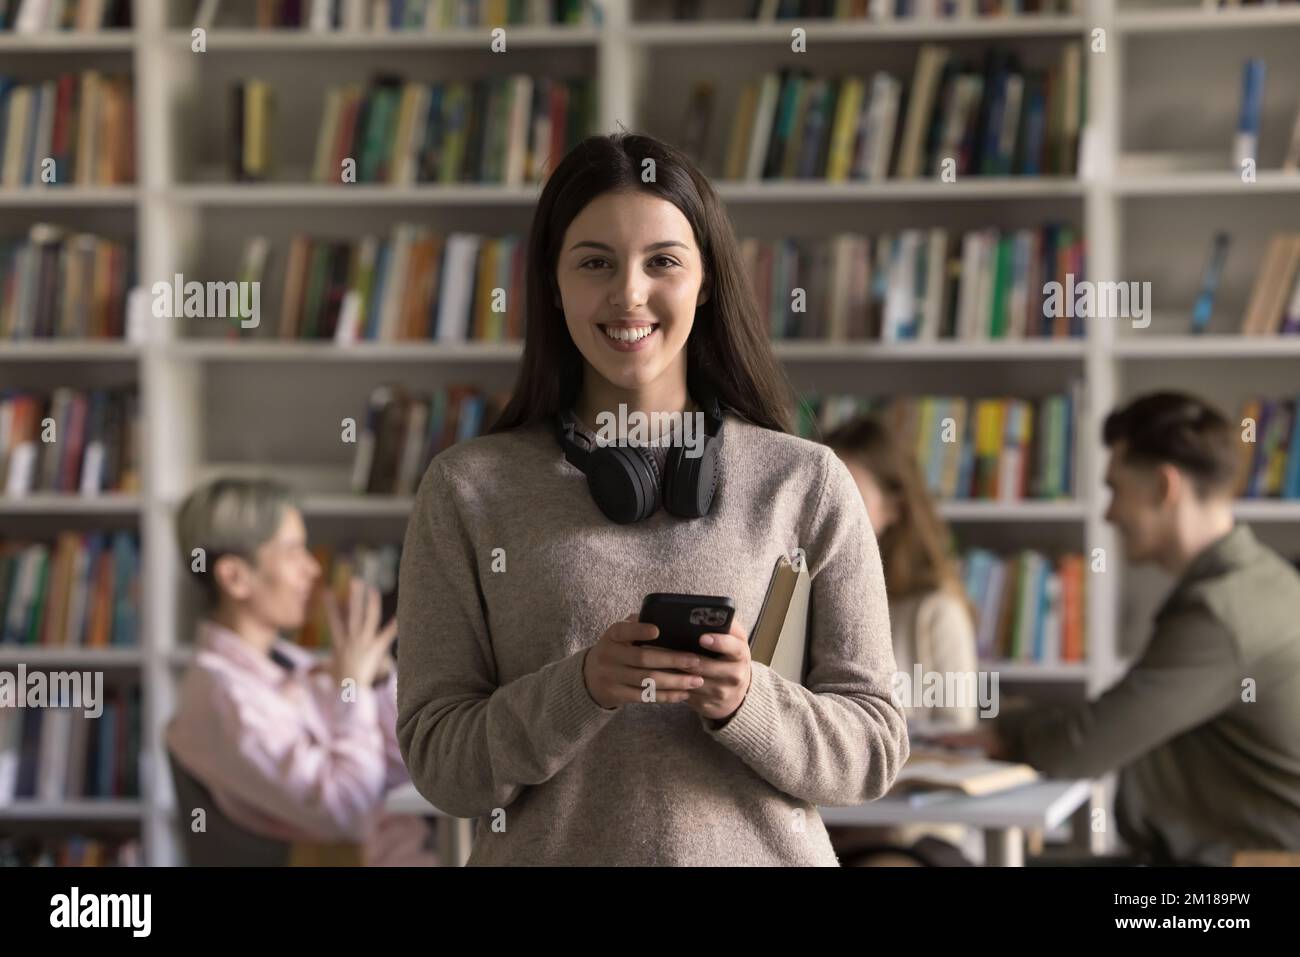 Bonne jolie fille étudiante latine tenant un téléphone portable, regardant l'appareil photo Banque D'Images